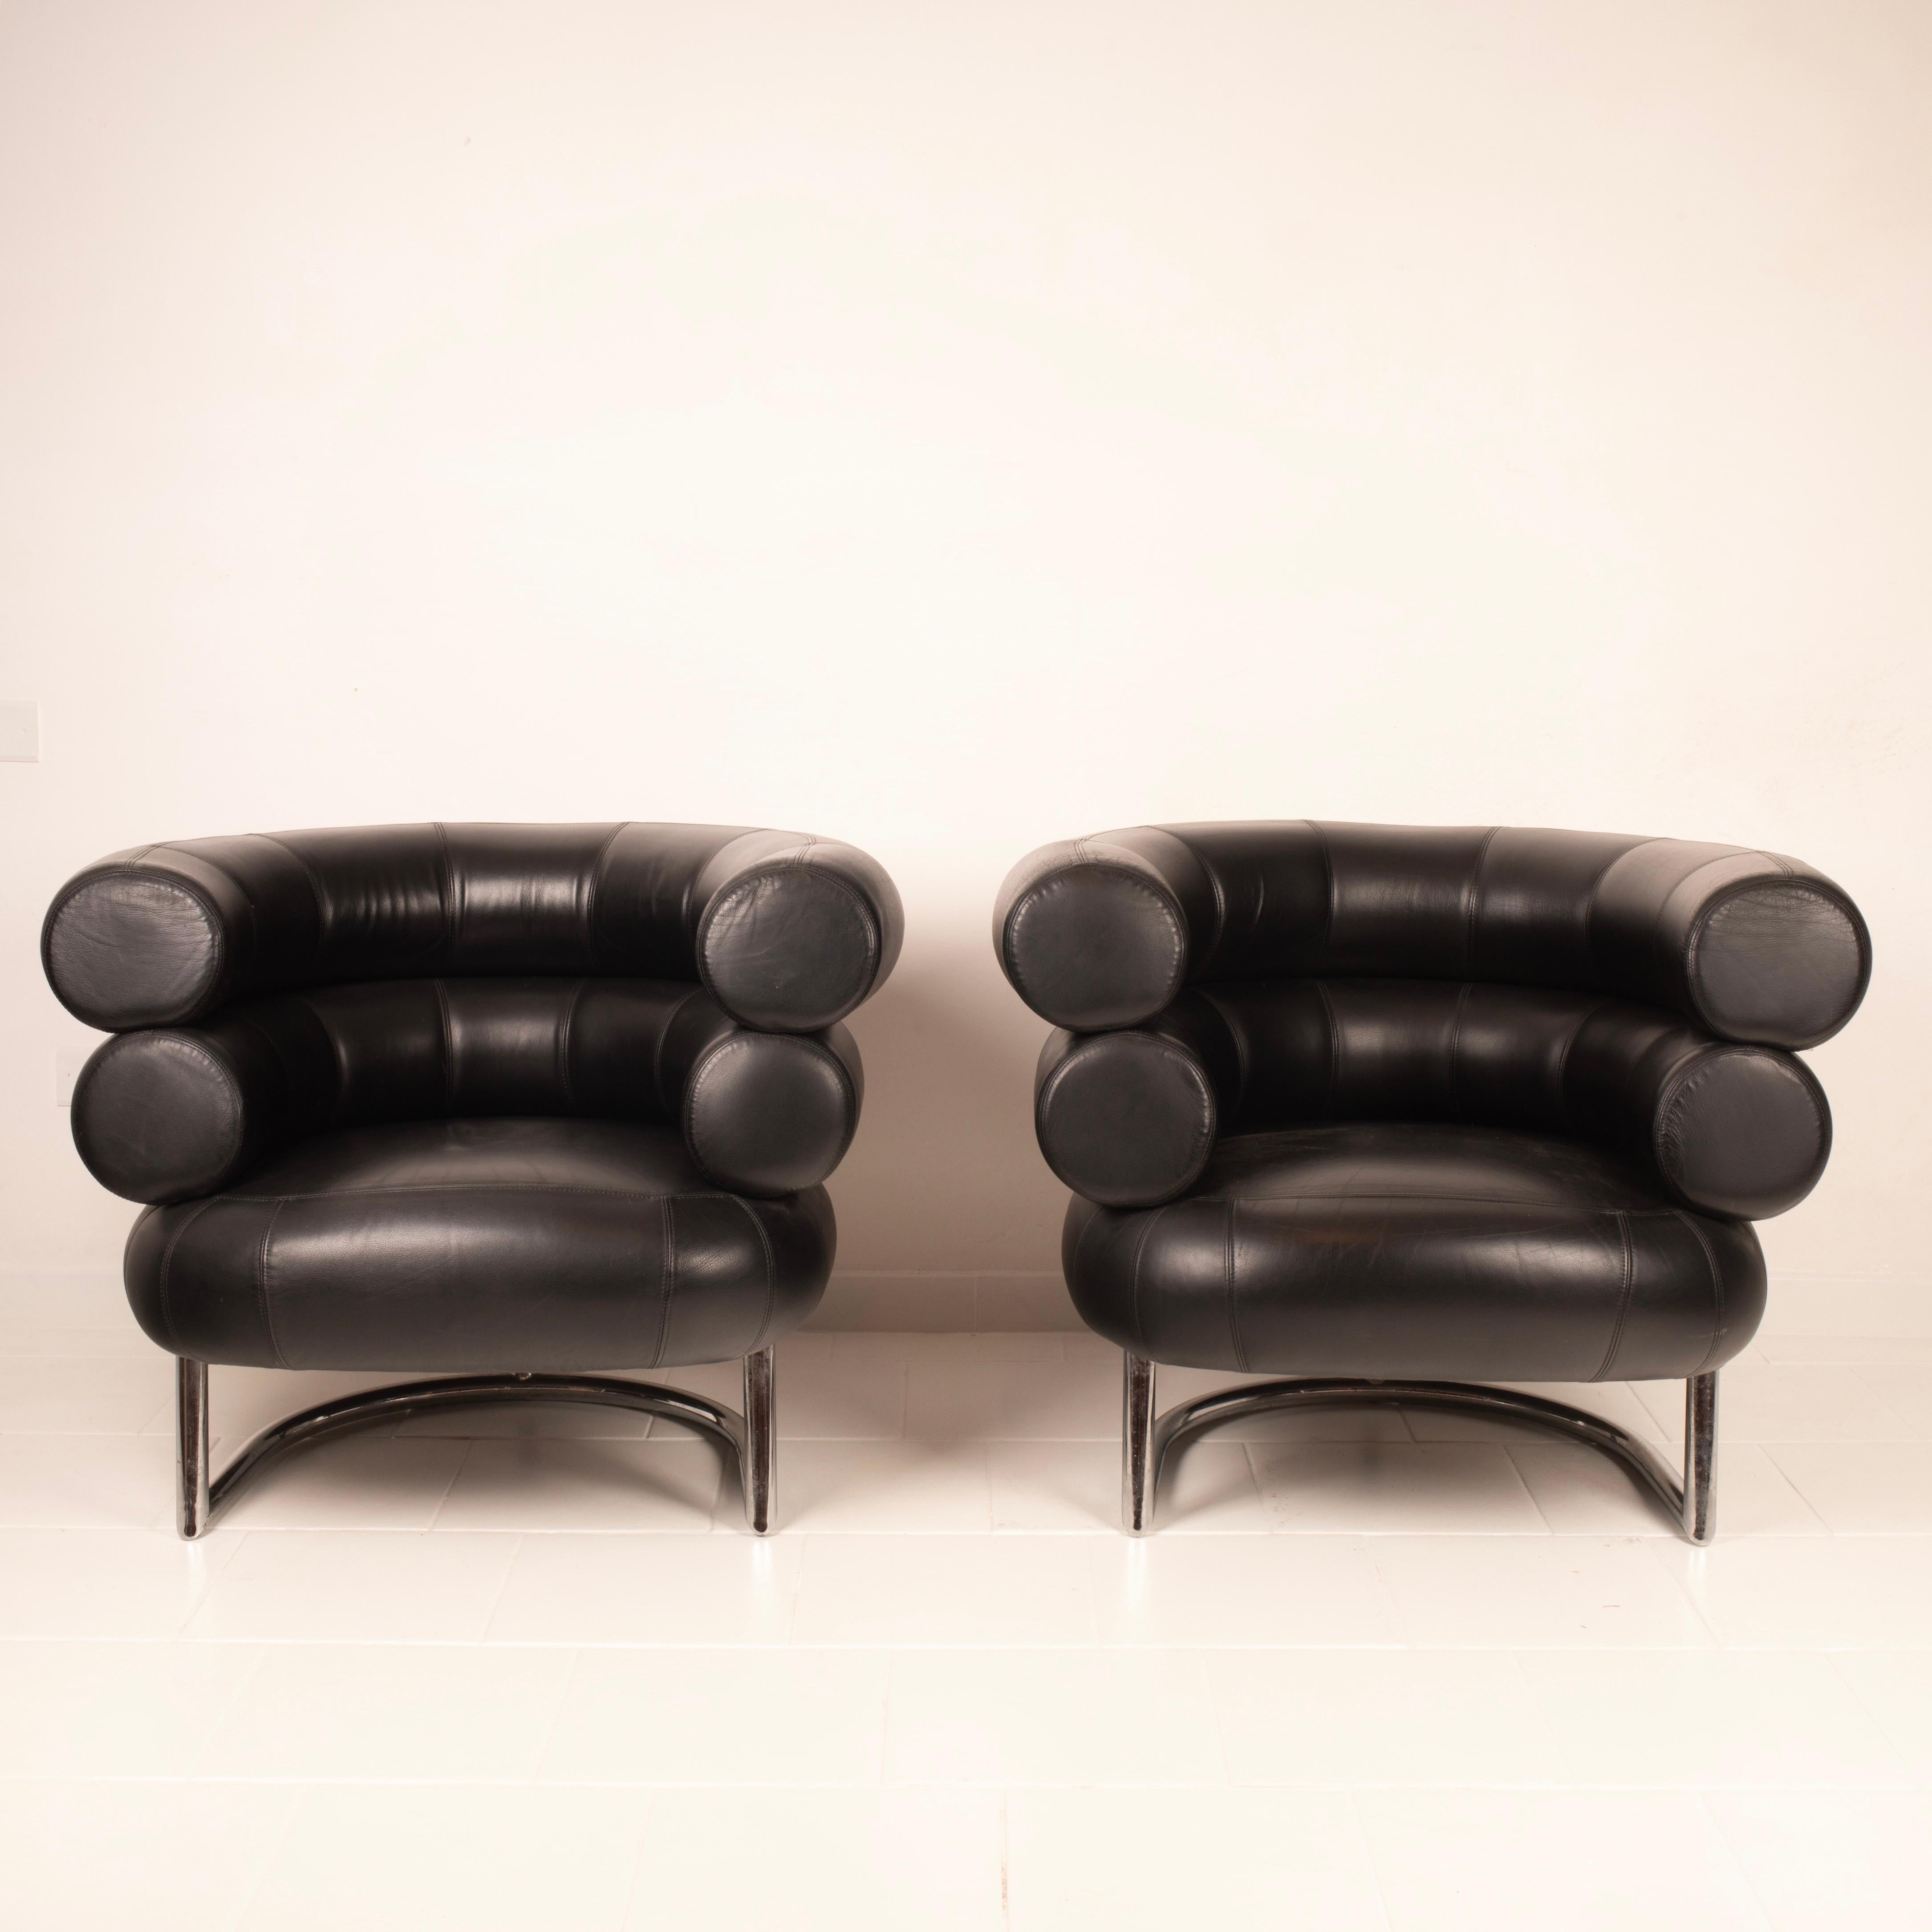 Straordinaria coppia di poltrone Bibendum ispirate al progetto originale di Eileen Gray e realizzate negli anni 80 in italia. Progettata per una famosa stilista dei primi del '900, il nome ed il design di questa sedia sono stati ispirati dal famoso